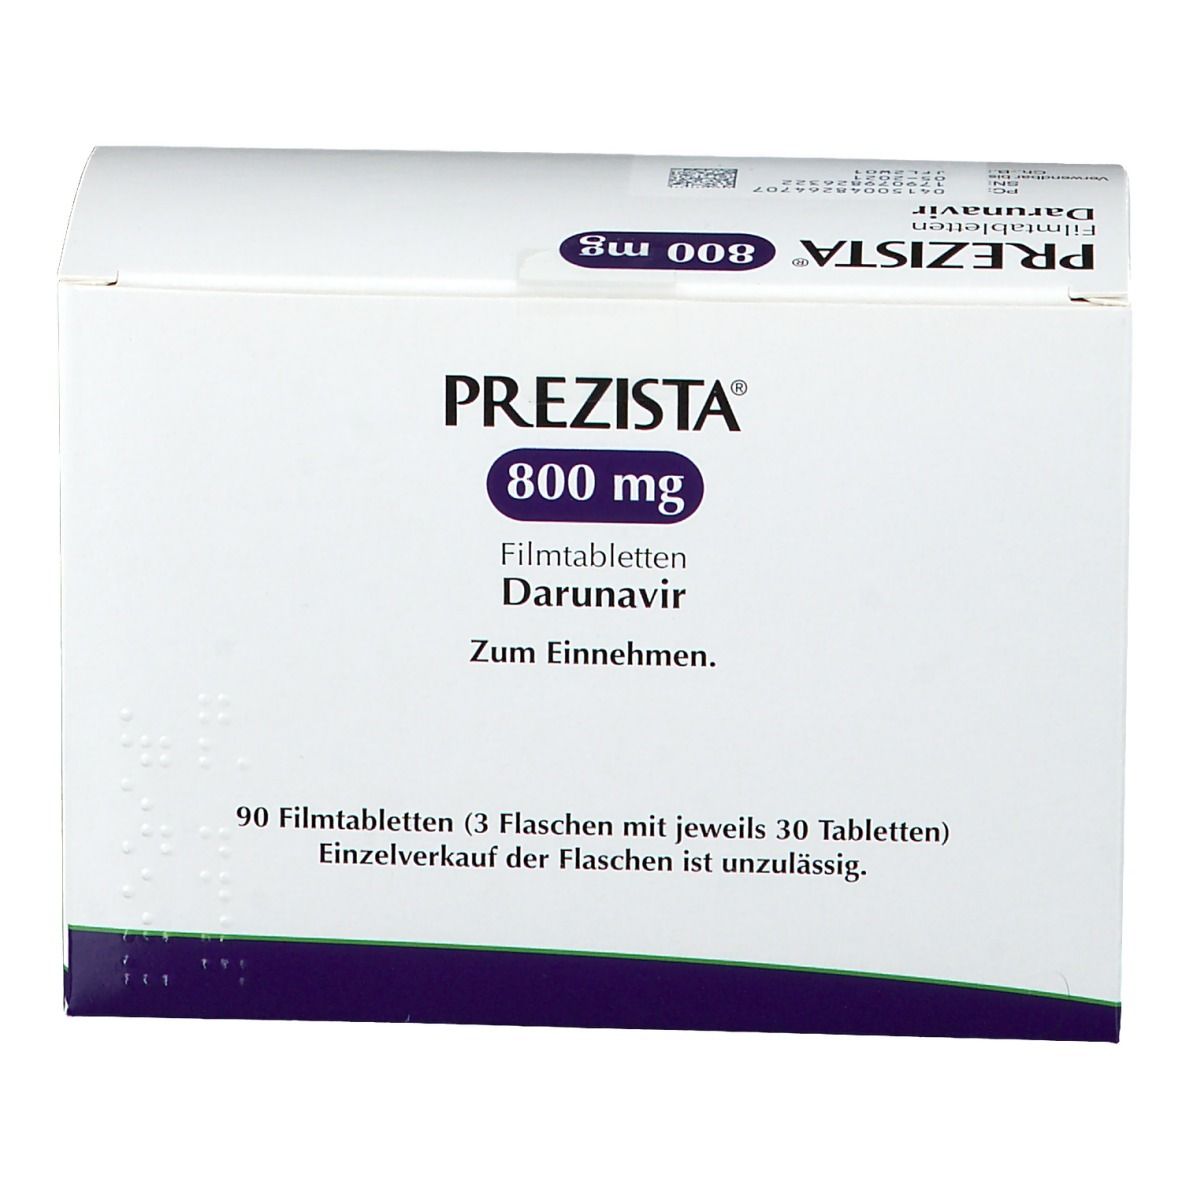 PREZISTA® 800 mg